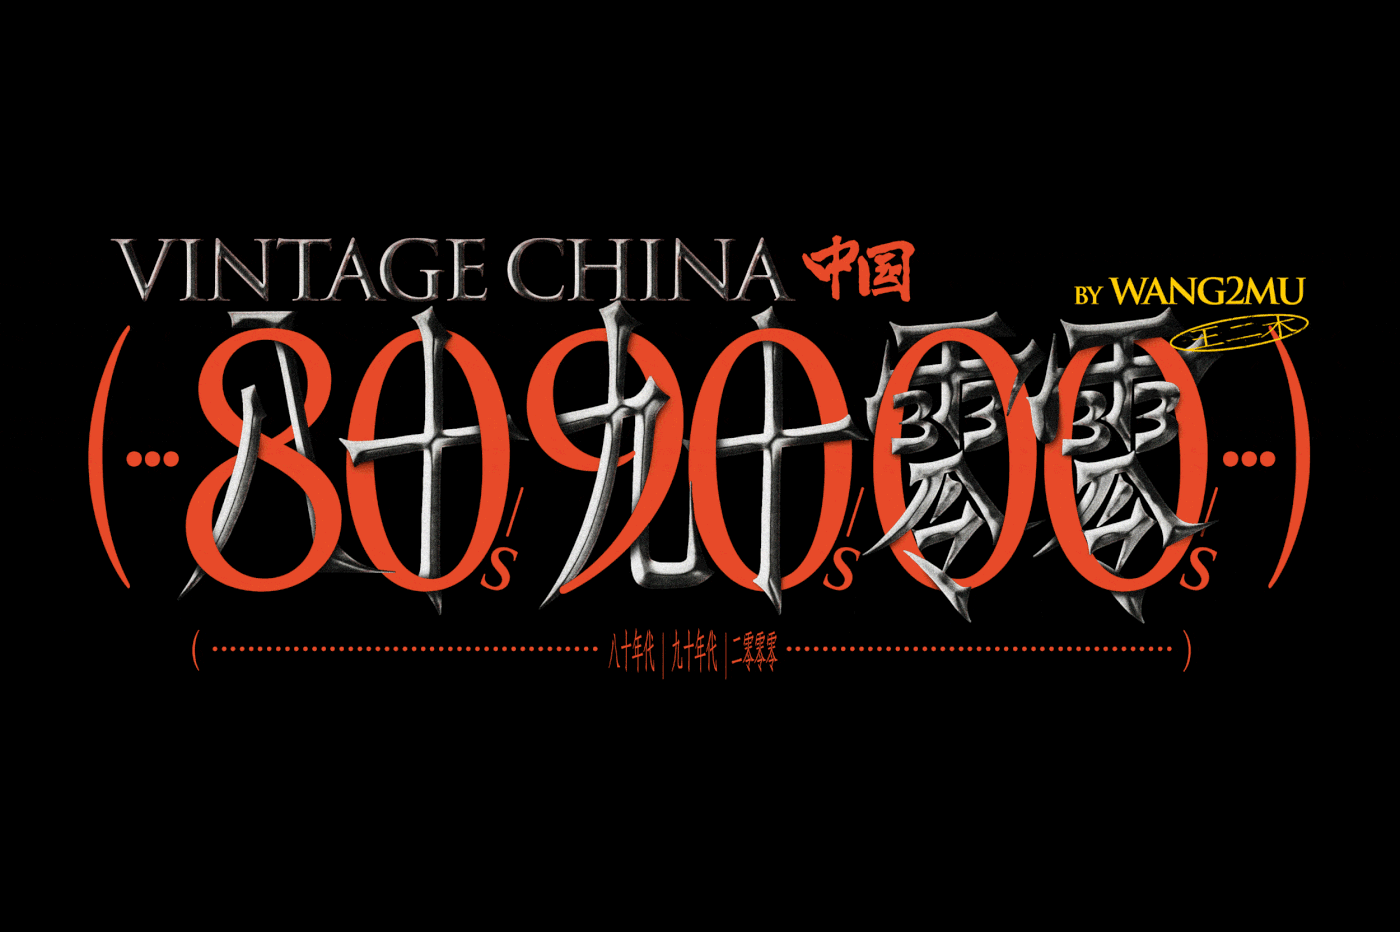 00s 80s 90s blender china Eevee vintage Vintage china wang2mu 王二木